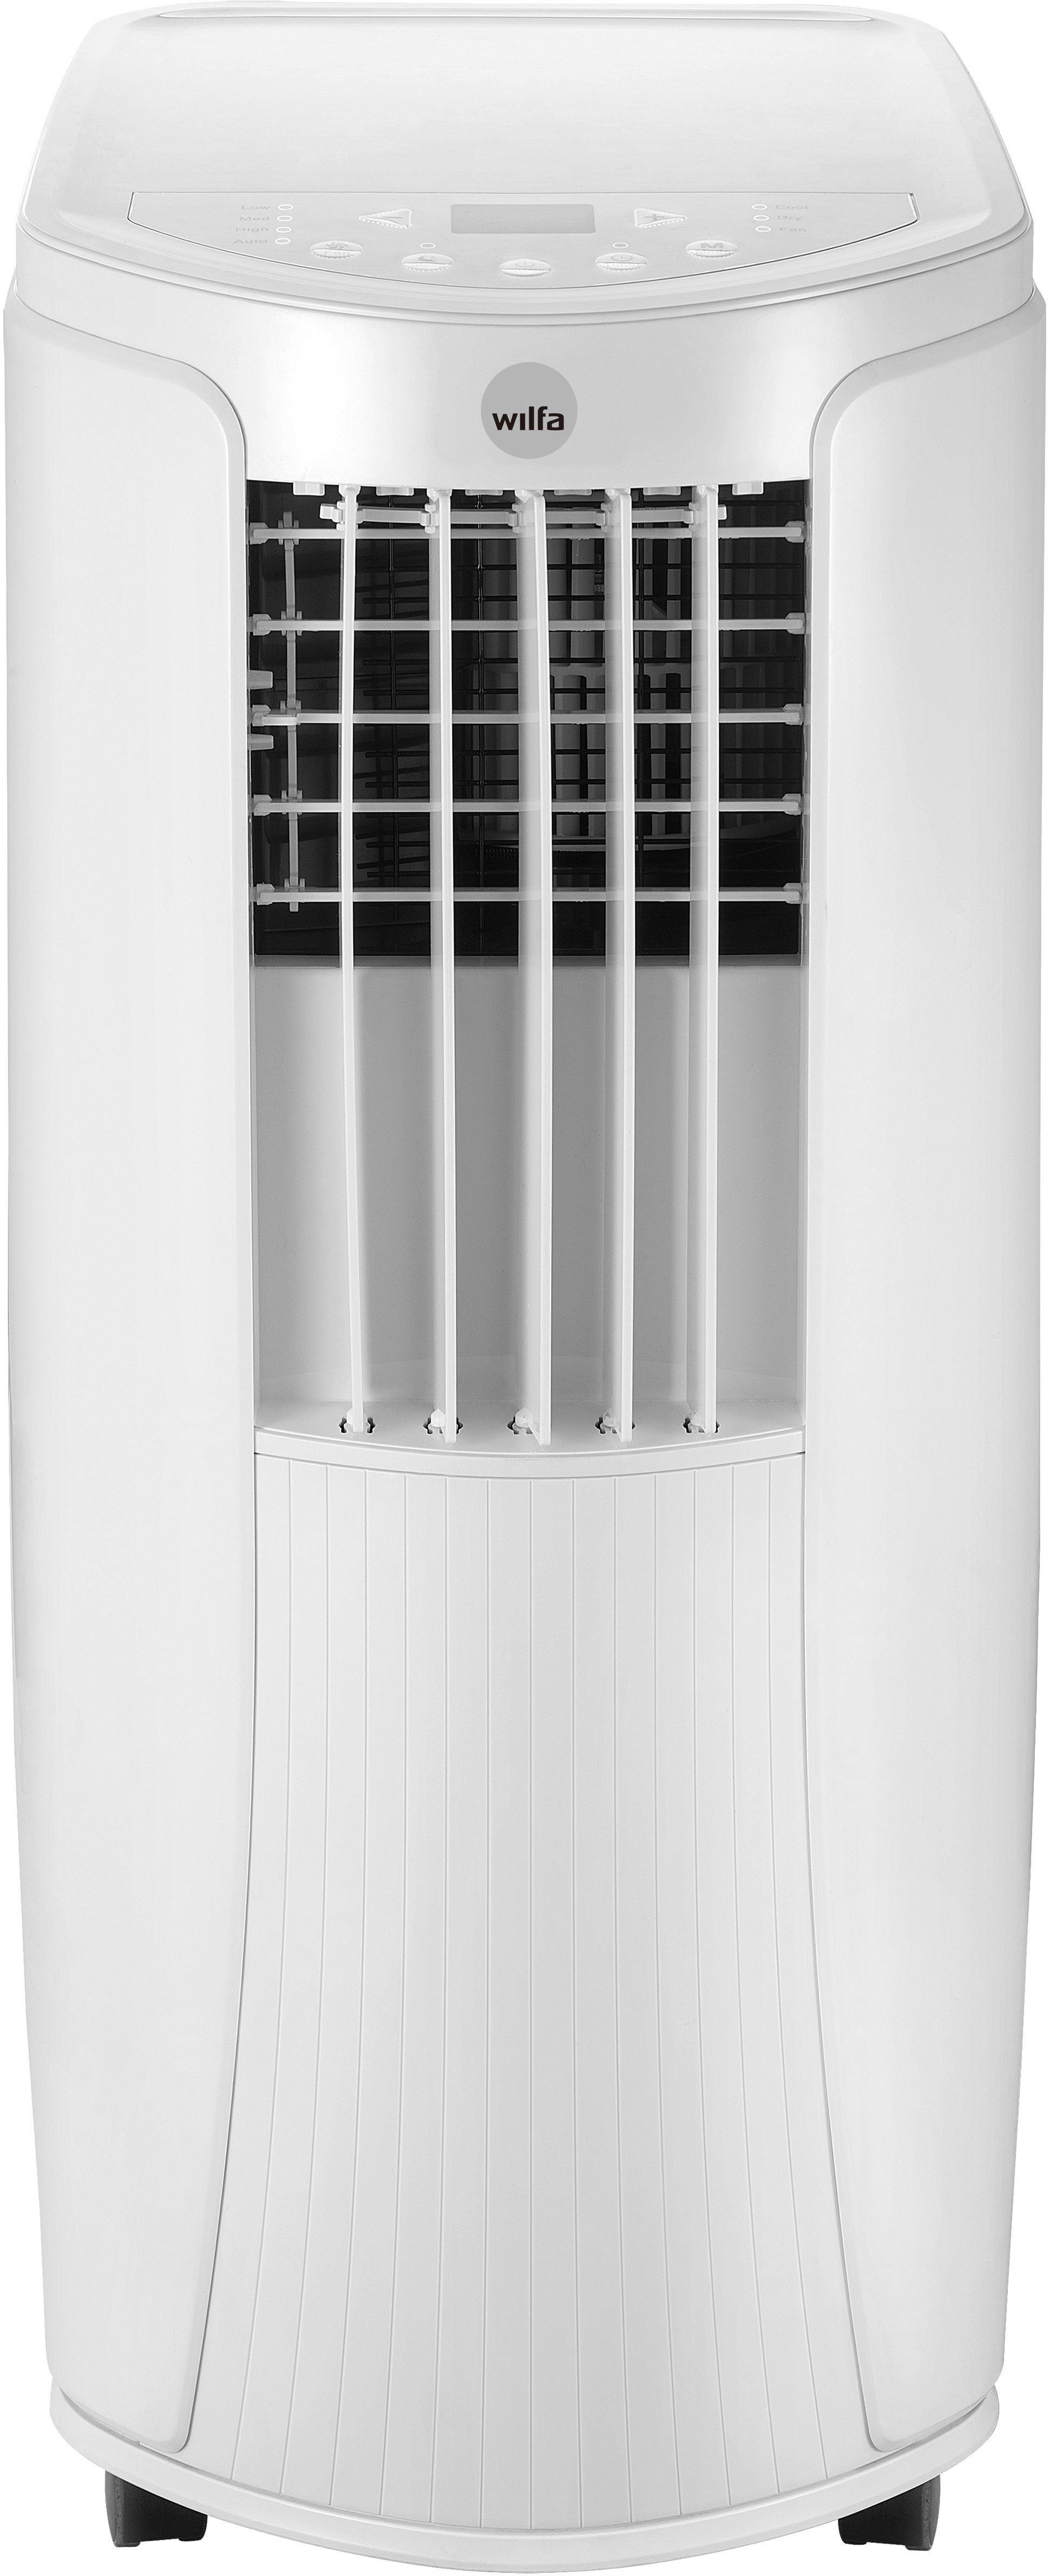 wilfa Klimagerät Cool 7, mobile Klimaanlage, geeignet für Räume bis 20m²